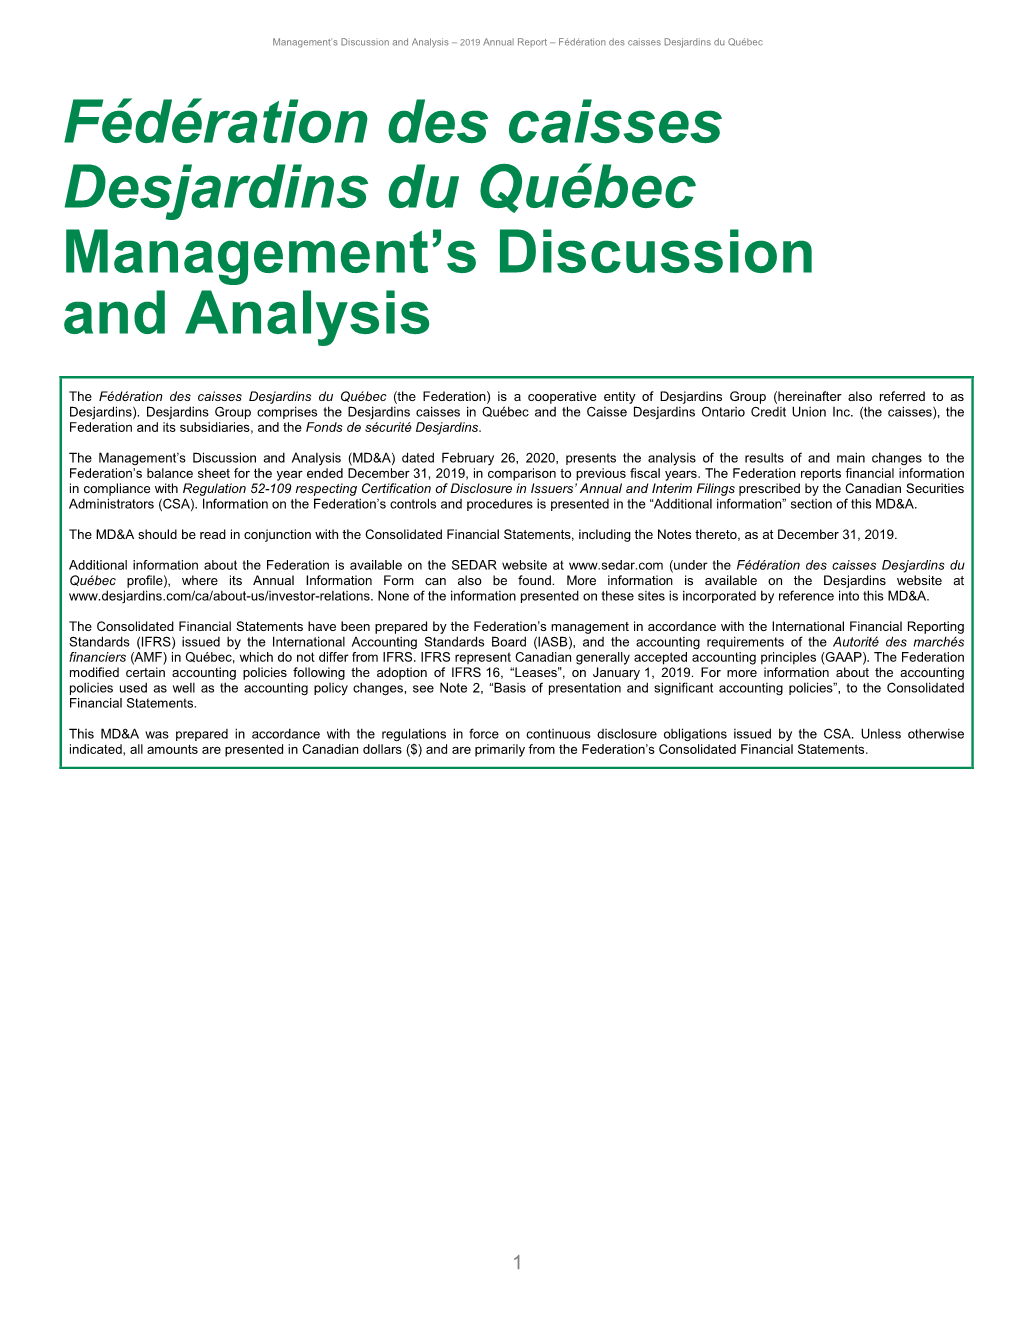 Fédération Des Caisses Desjardins Du Québec Management's Discussion and Analysis